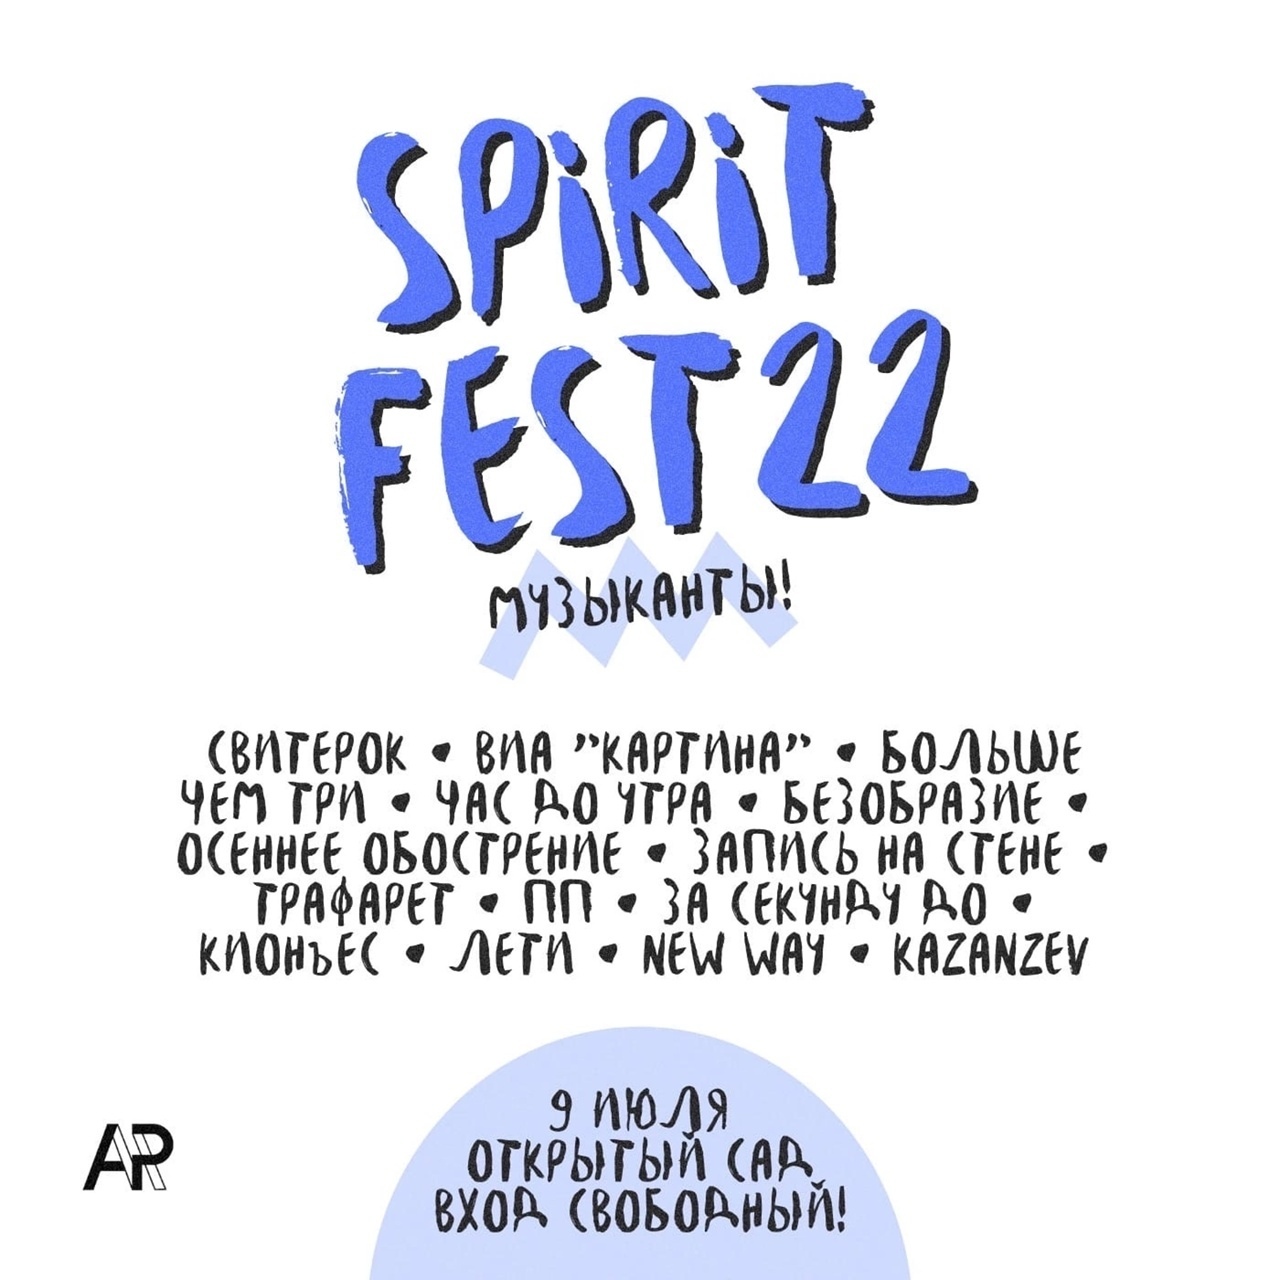 SPIRIT FEST — 2022